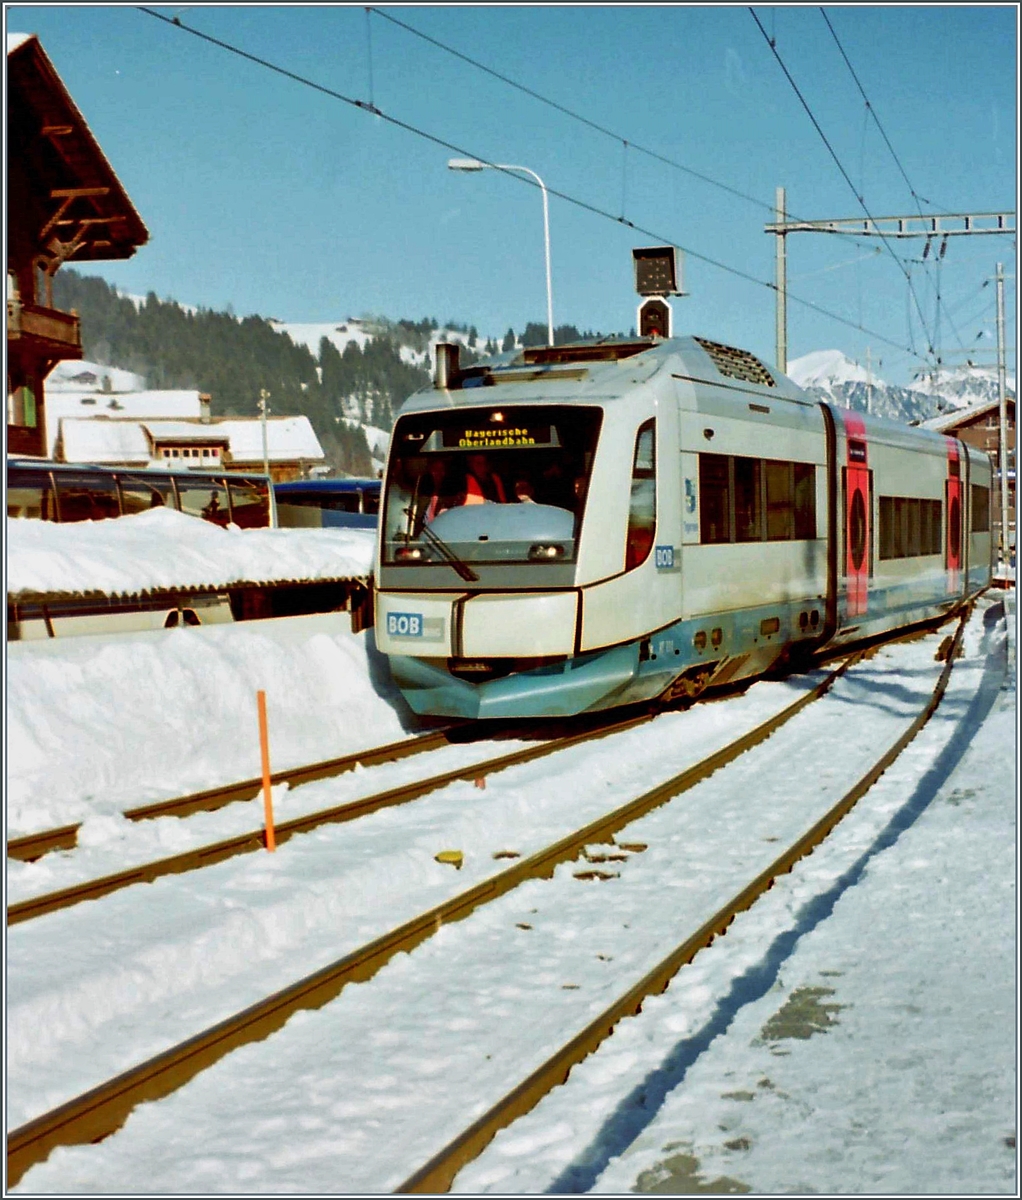 Nachdem am 26 Dez. 1999 der der Sturm  Lothar  übers Land gebraust war, hatten etliche Bahnen Fahrleitungs-Störungen. Da sich diese im Falle der SEZ-Bahn über längere Zeit hinzogen, entschloss sich die Bahn zum ungewohnten Schritt, mit denn abgestellten BOB Dieseltriebzügen der BOB (Bayrische Oberland Bahn) einen Notbetrieb anzubieten. Auf dem Bild erreicht ein BOB  Integral  Zweisimmen. 

7. Jan. 2000